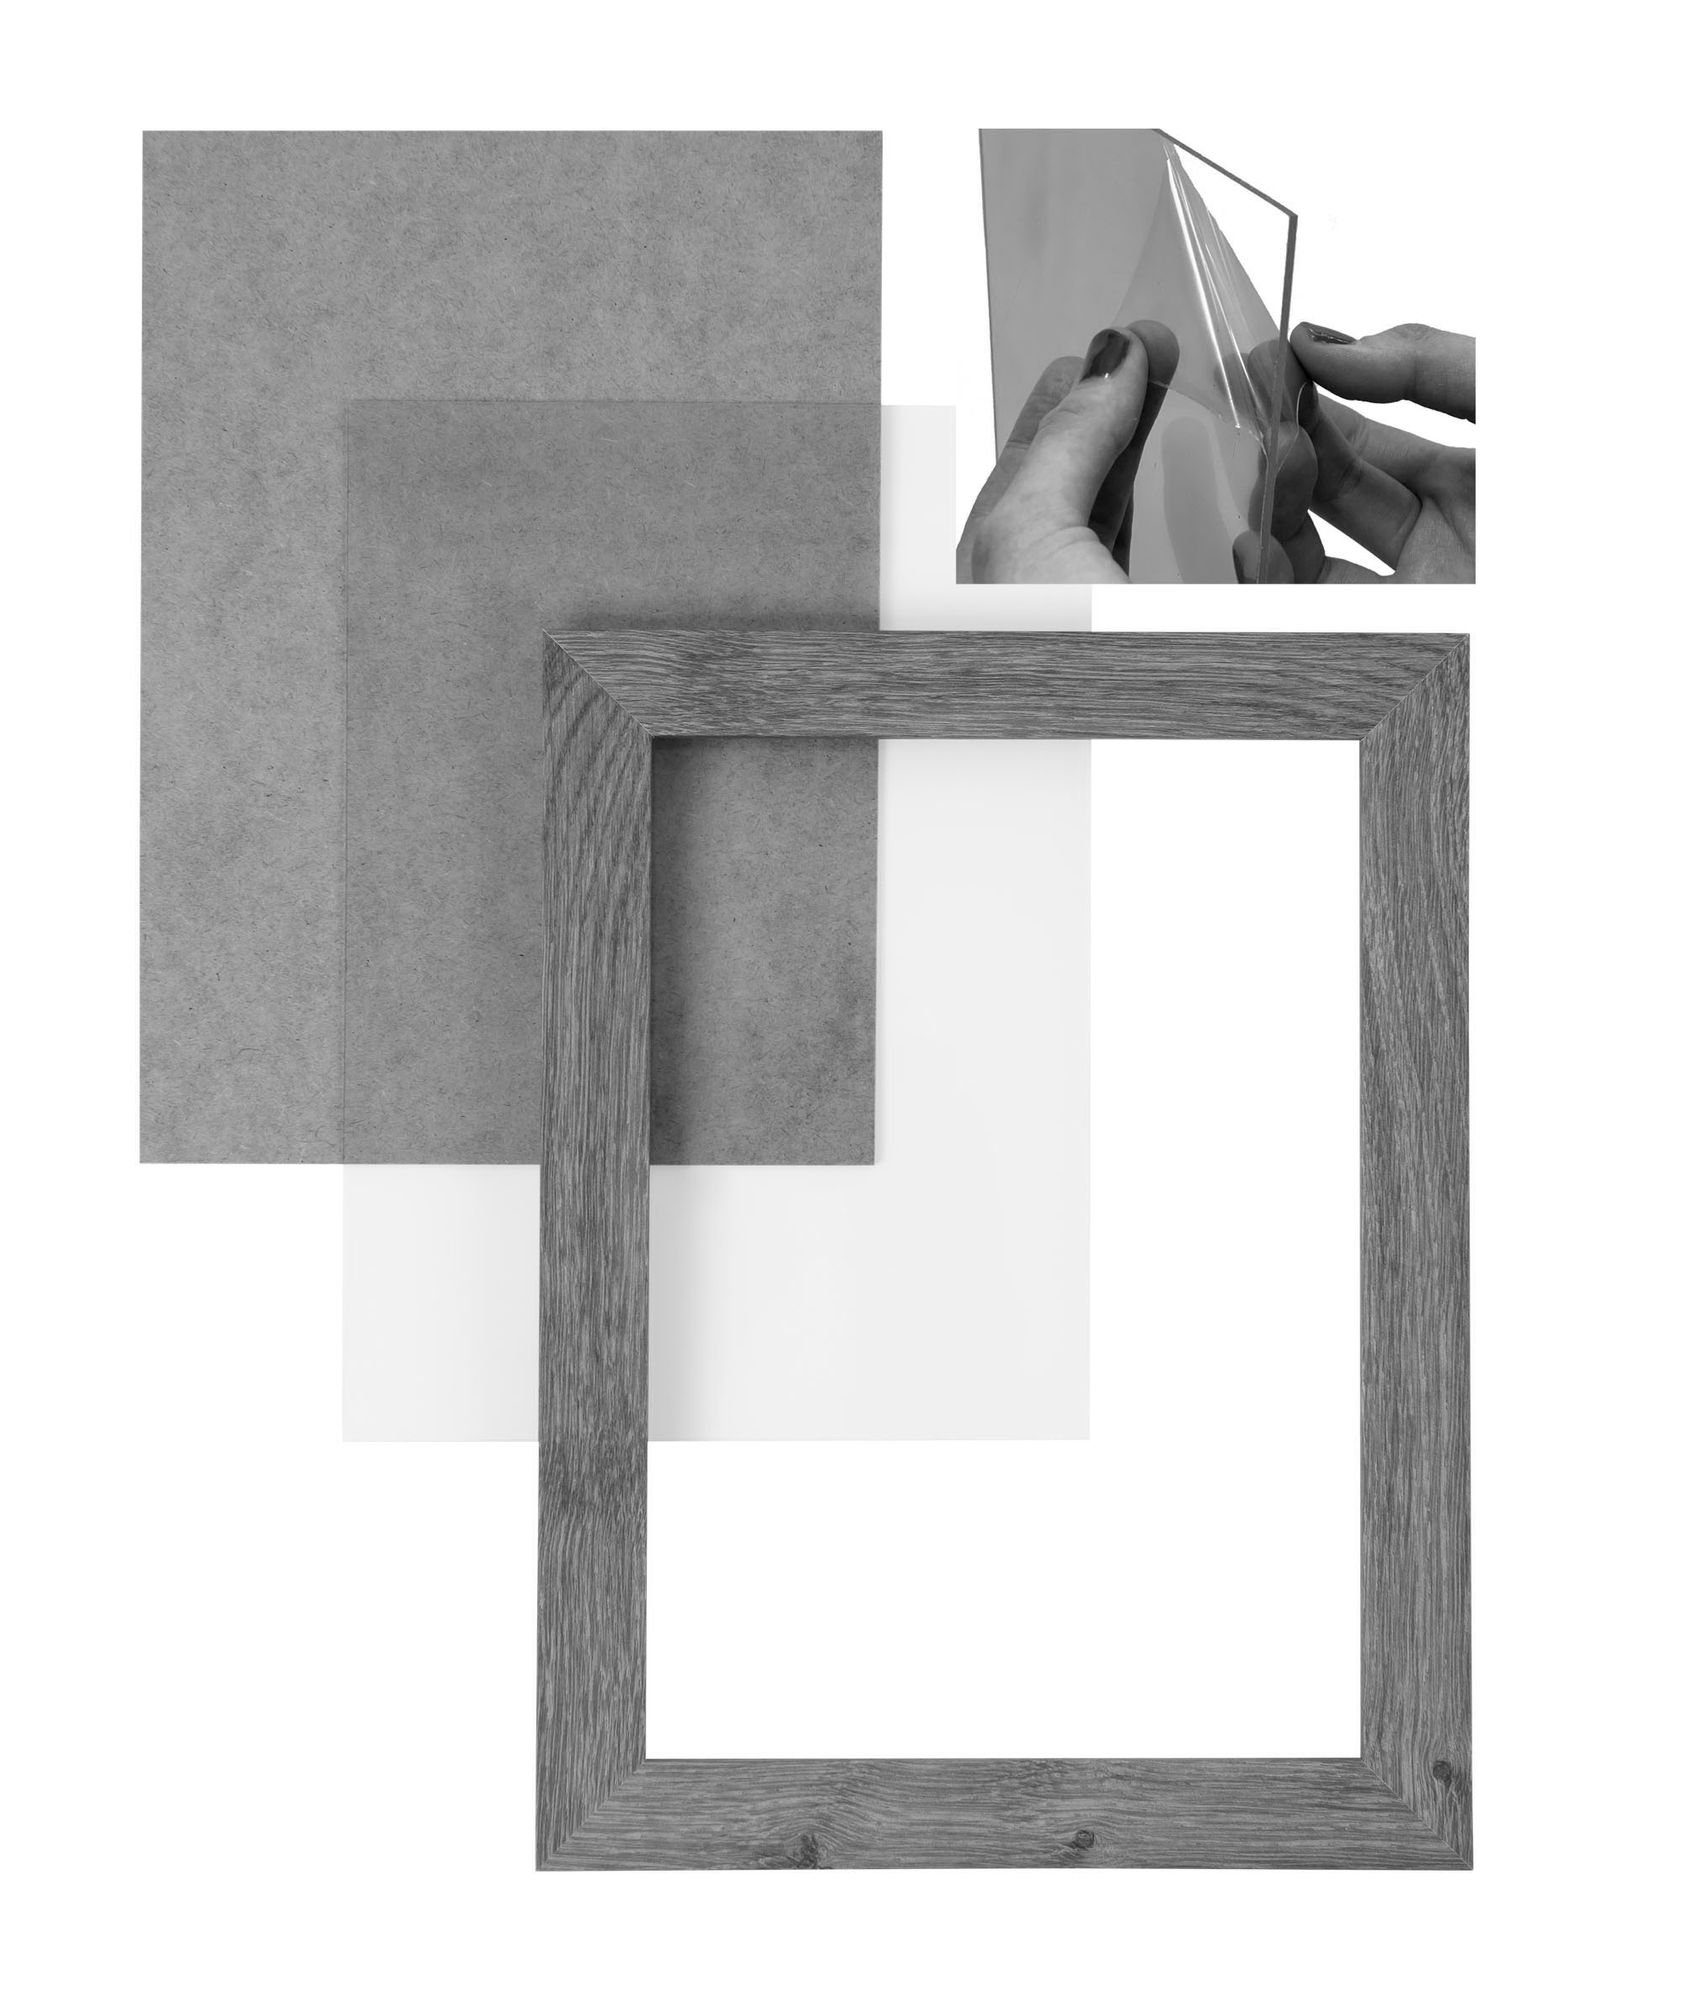 Maß Holz in Acrylglas, vintage Moderner weiss Bilderrahmen MDF und handgefertigt Clamaro Bilderrahmen 'Collage' 26x29 Rückwand Rahmen eckiger inkl. CLAMARO Aufhänger nach FSC®